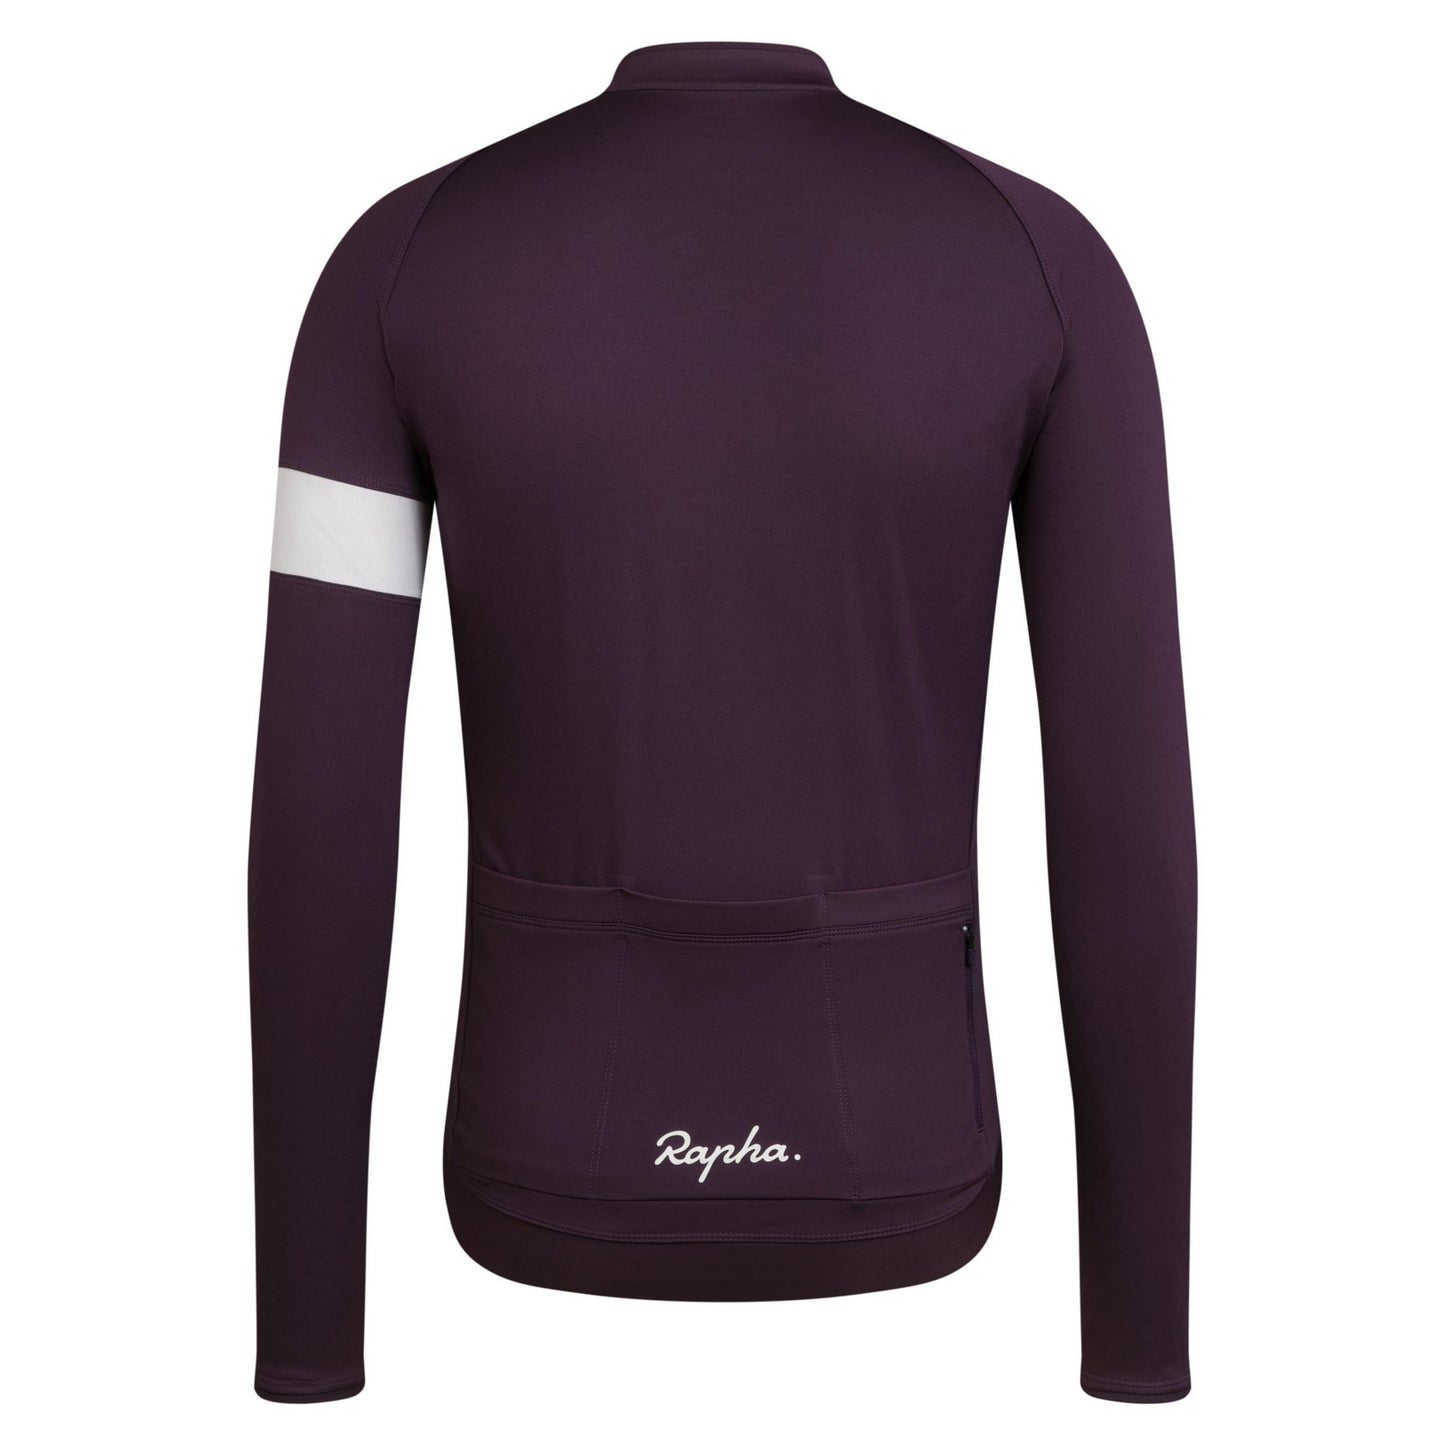 Rapha Men's Long Sleeve Core Jersey - Purple/White